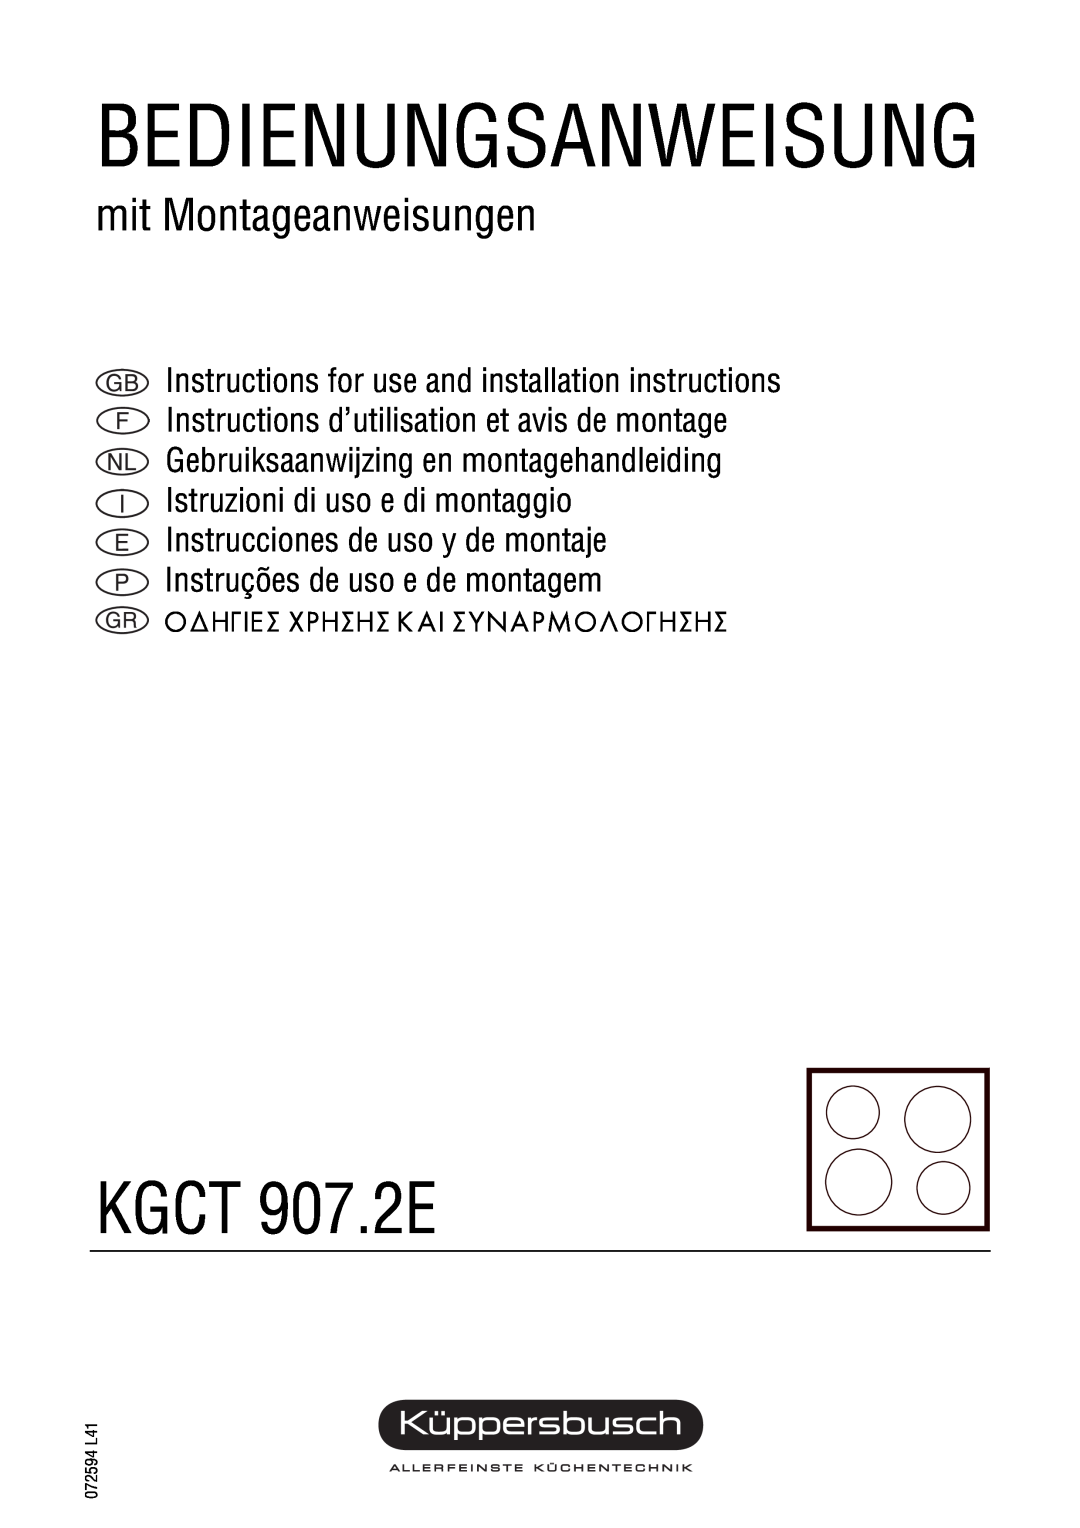 Kuppersbusch USA KGCT 907.2E installation instructions Bedienungsanweisung, mit Montageanweisungen, 072594 L41 